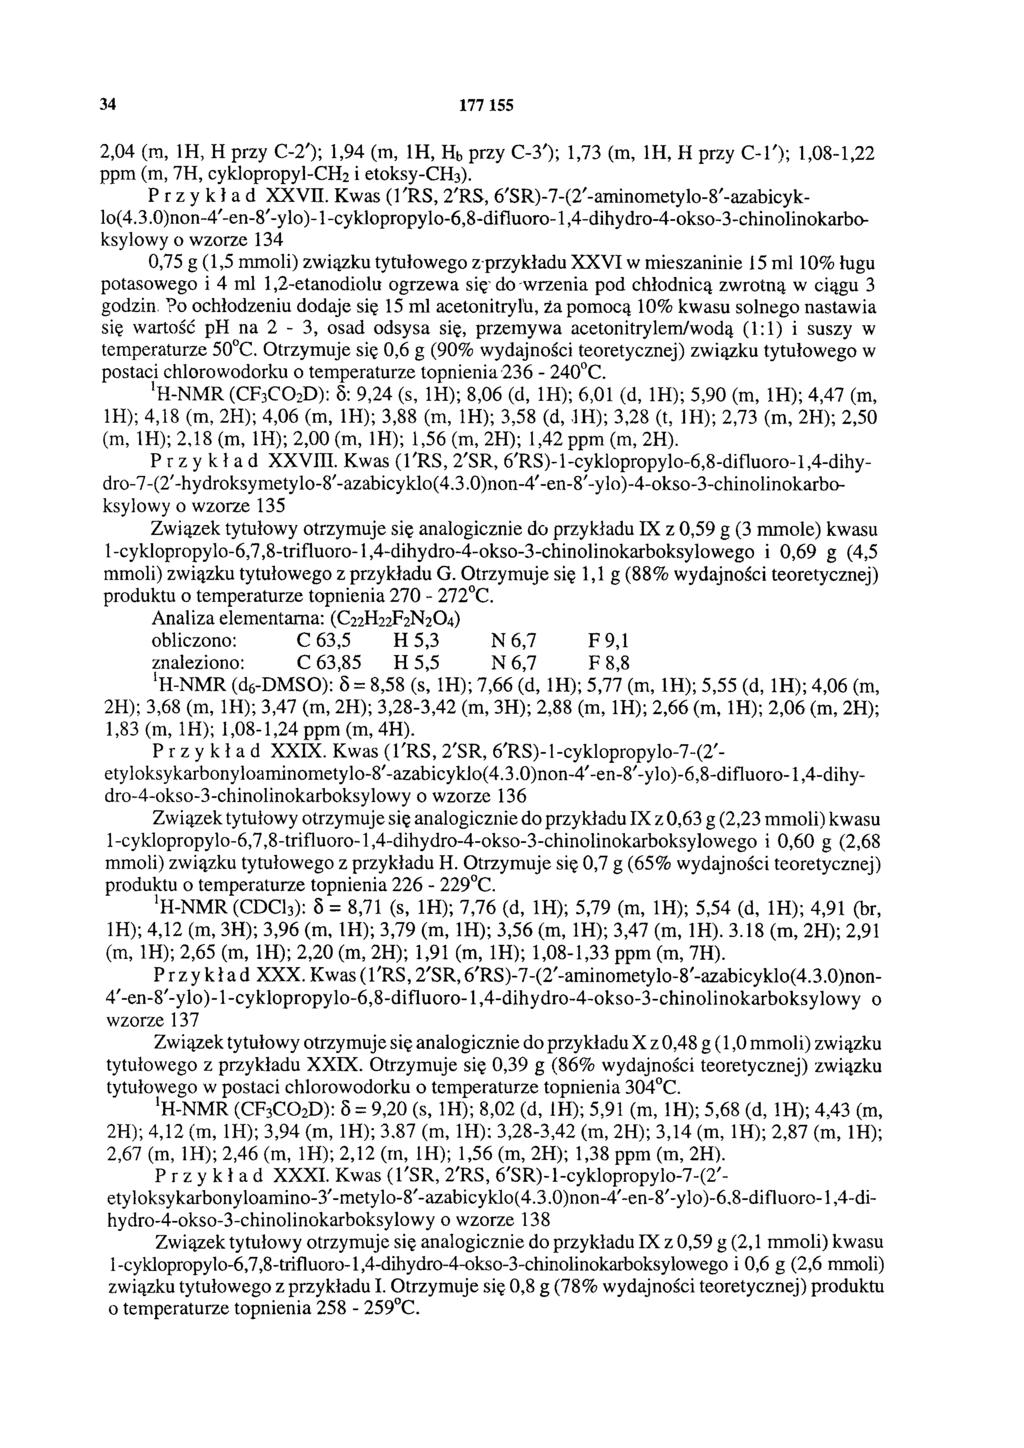 34 177 155 2,04 (m, 1H, H przy C-2'); 1,94 (m, 1H, Hb przy C-3'); 1,73 (m, 1H, H przy C-1'); 1,08-1,22 ppm (m, 7H, cyklopropyl-ch2 i etoksy-ch3). Przykład XXVII.